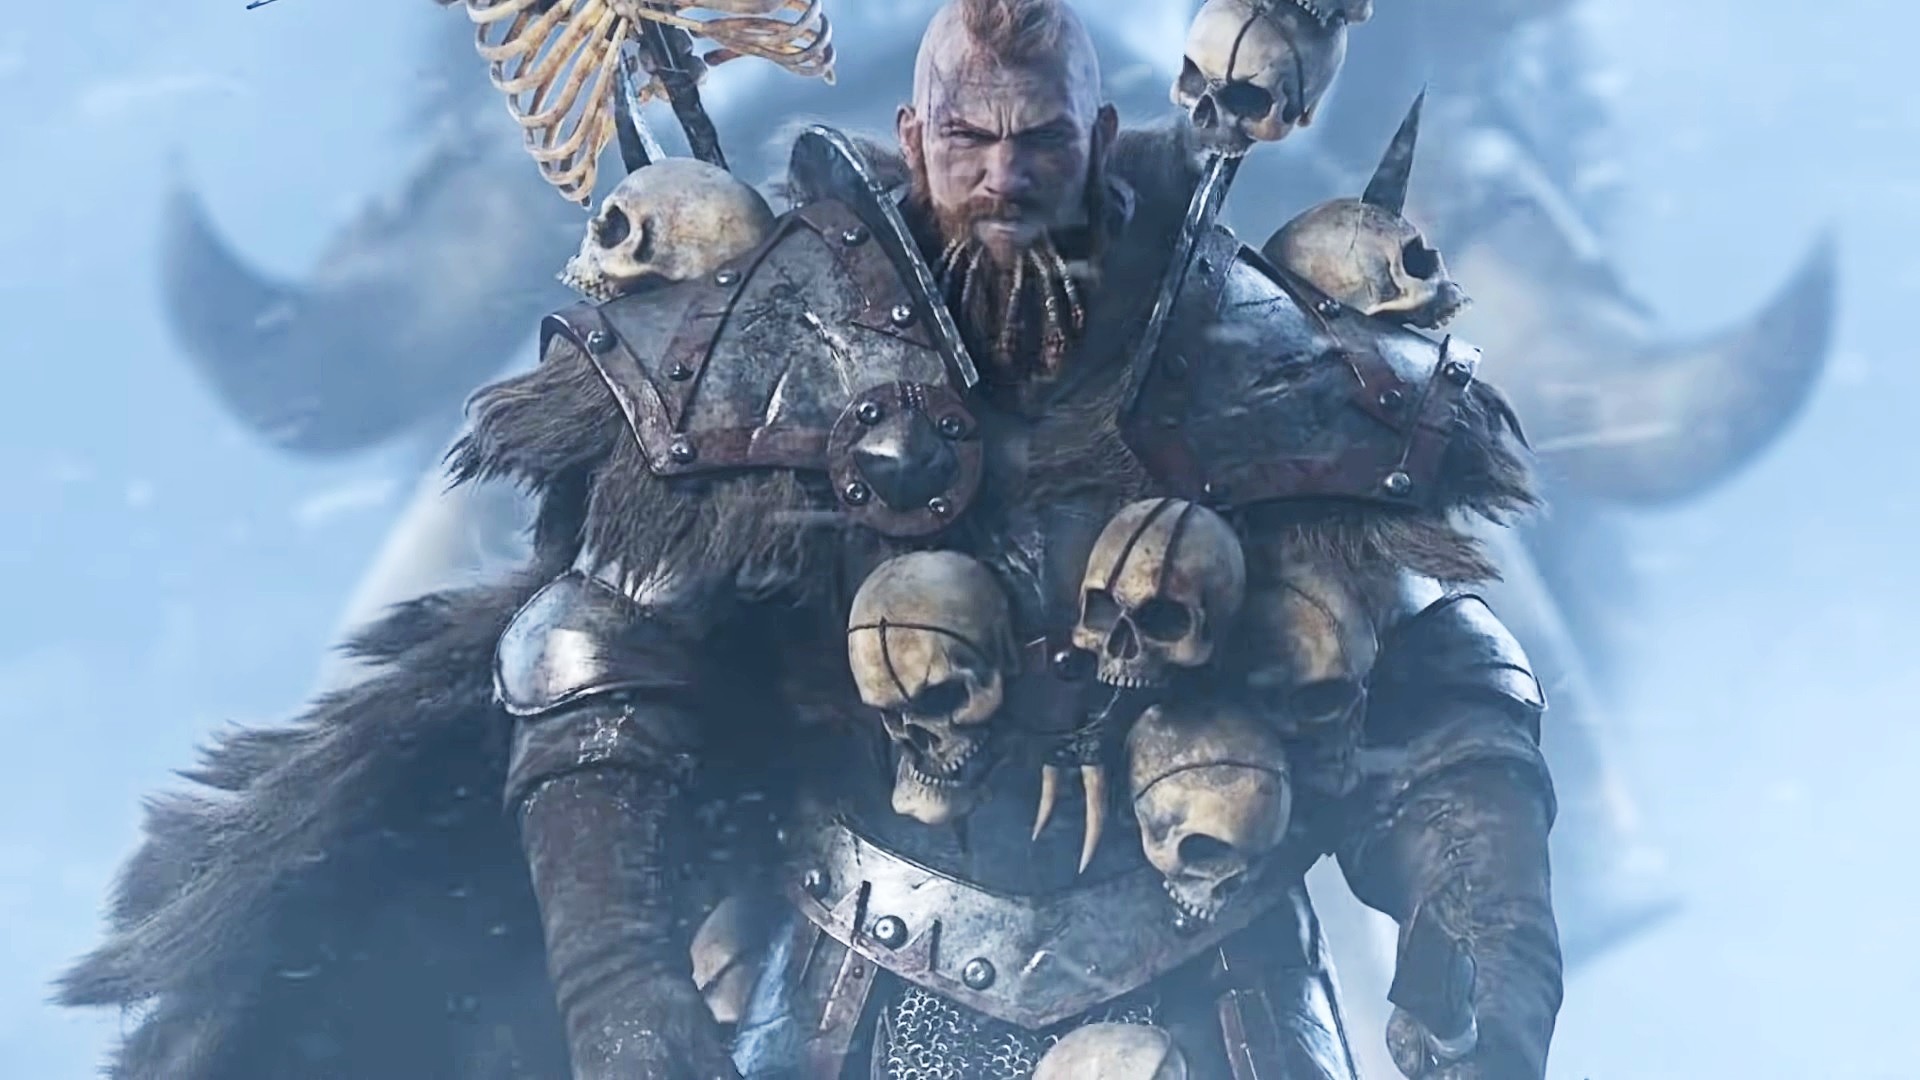 Total War: Warhammer is Epic's next free game